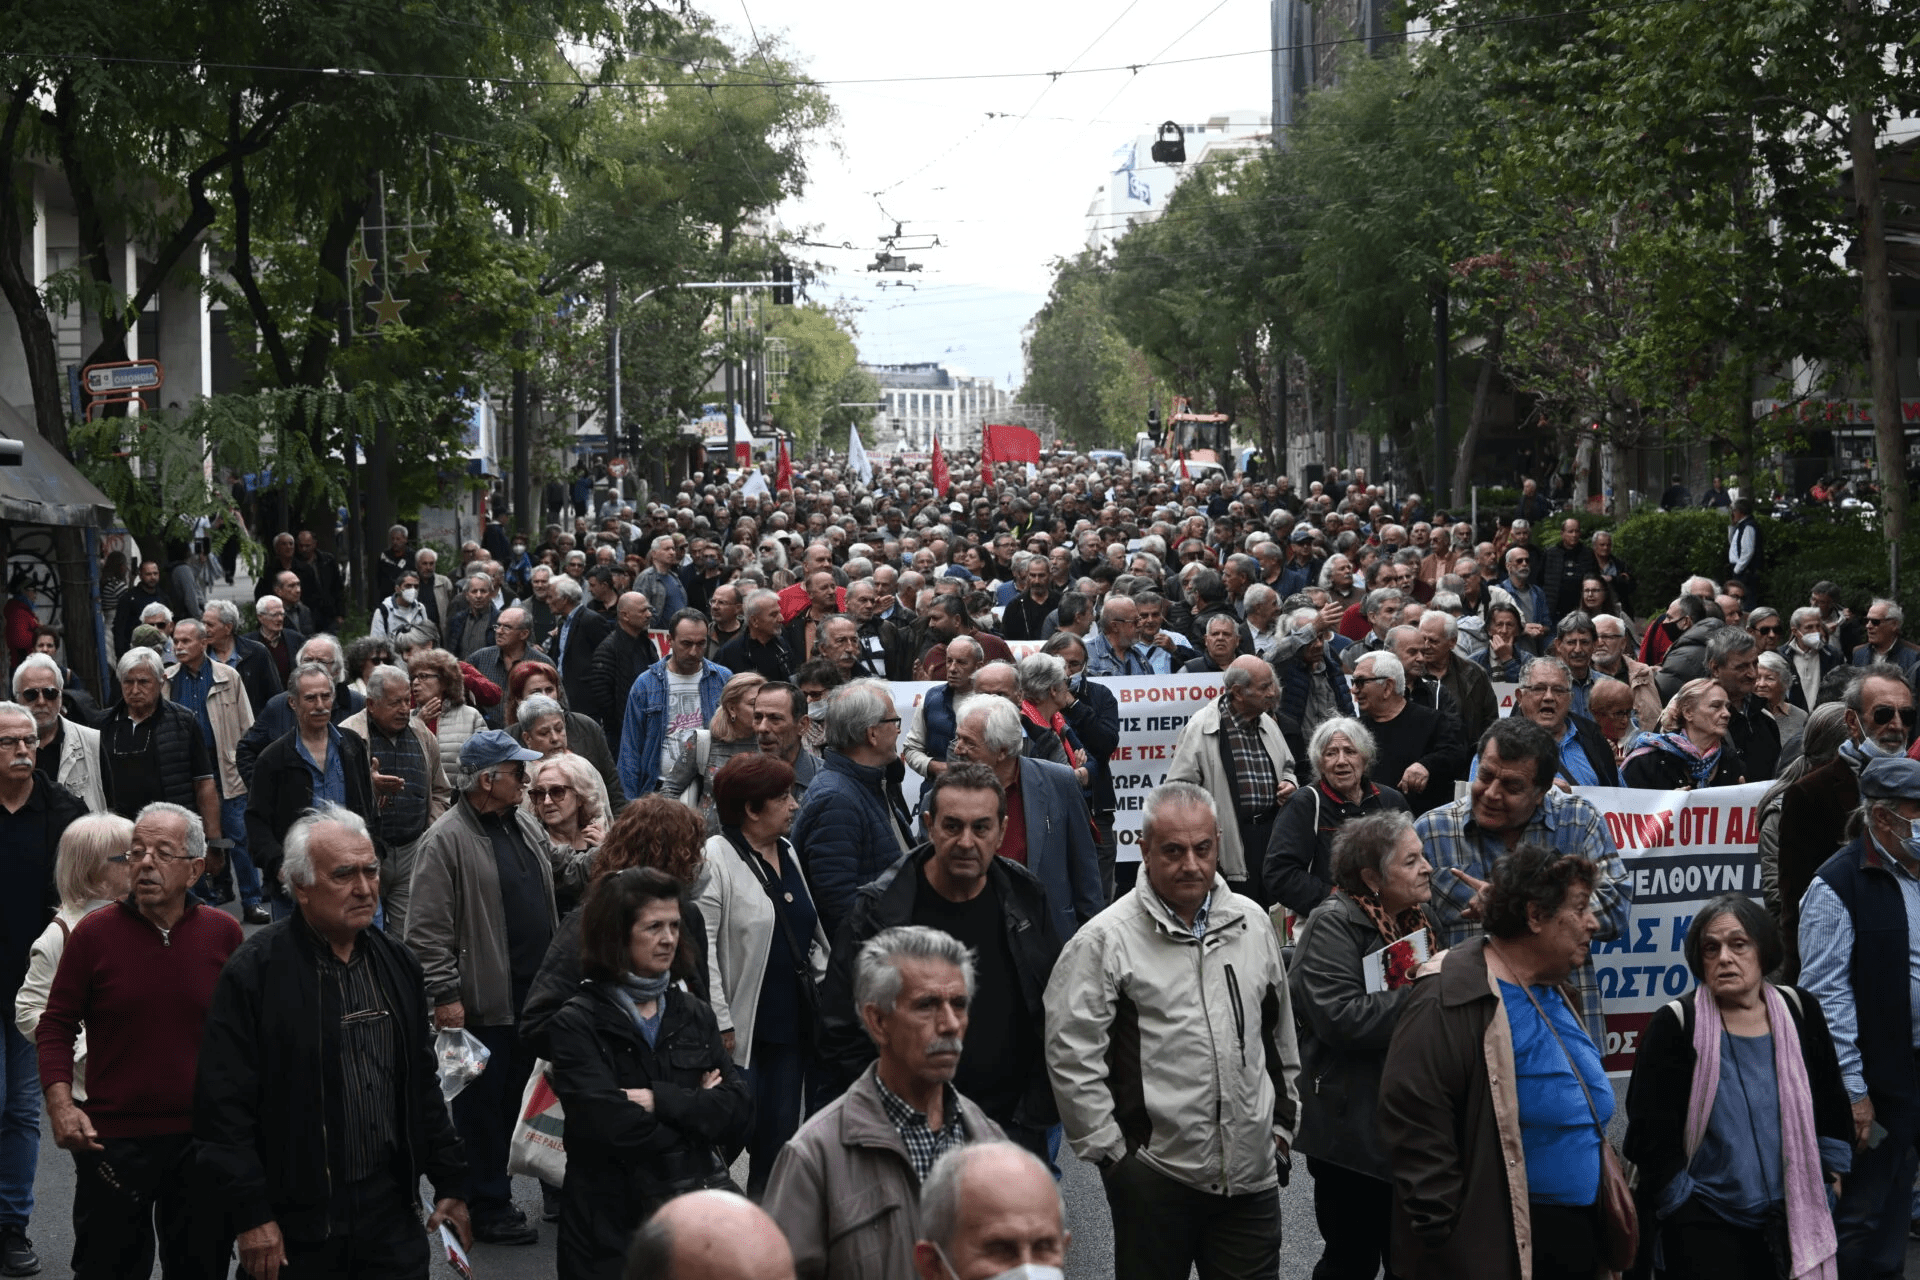 Αυξήσεις για μια αξιοπρεπή ζωή ζητούν οι περήφανοι συνταξιούχοι - Εντυπωσιακά μεγάλη πορεία στο κέντρο της Αθήνας.